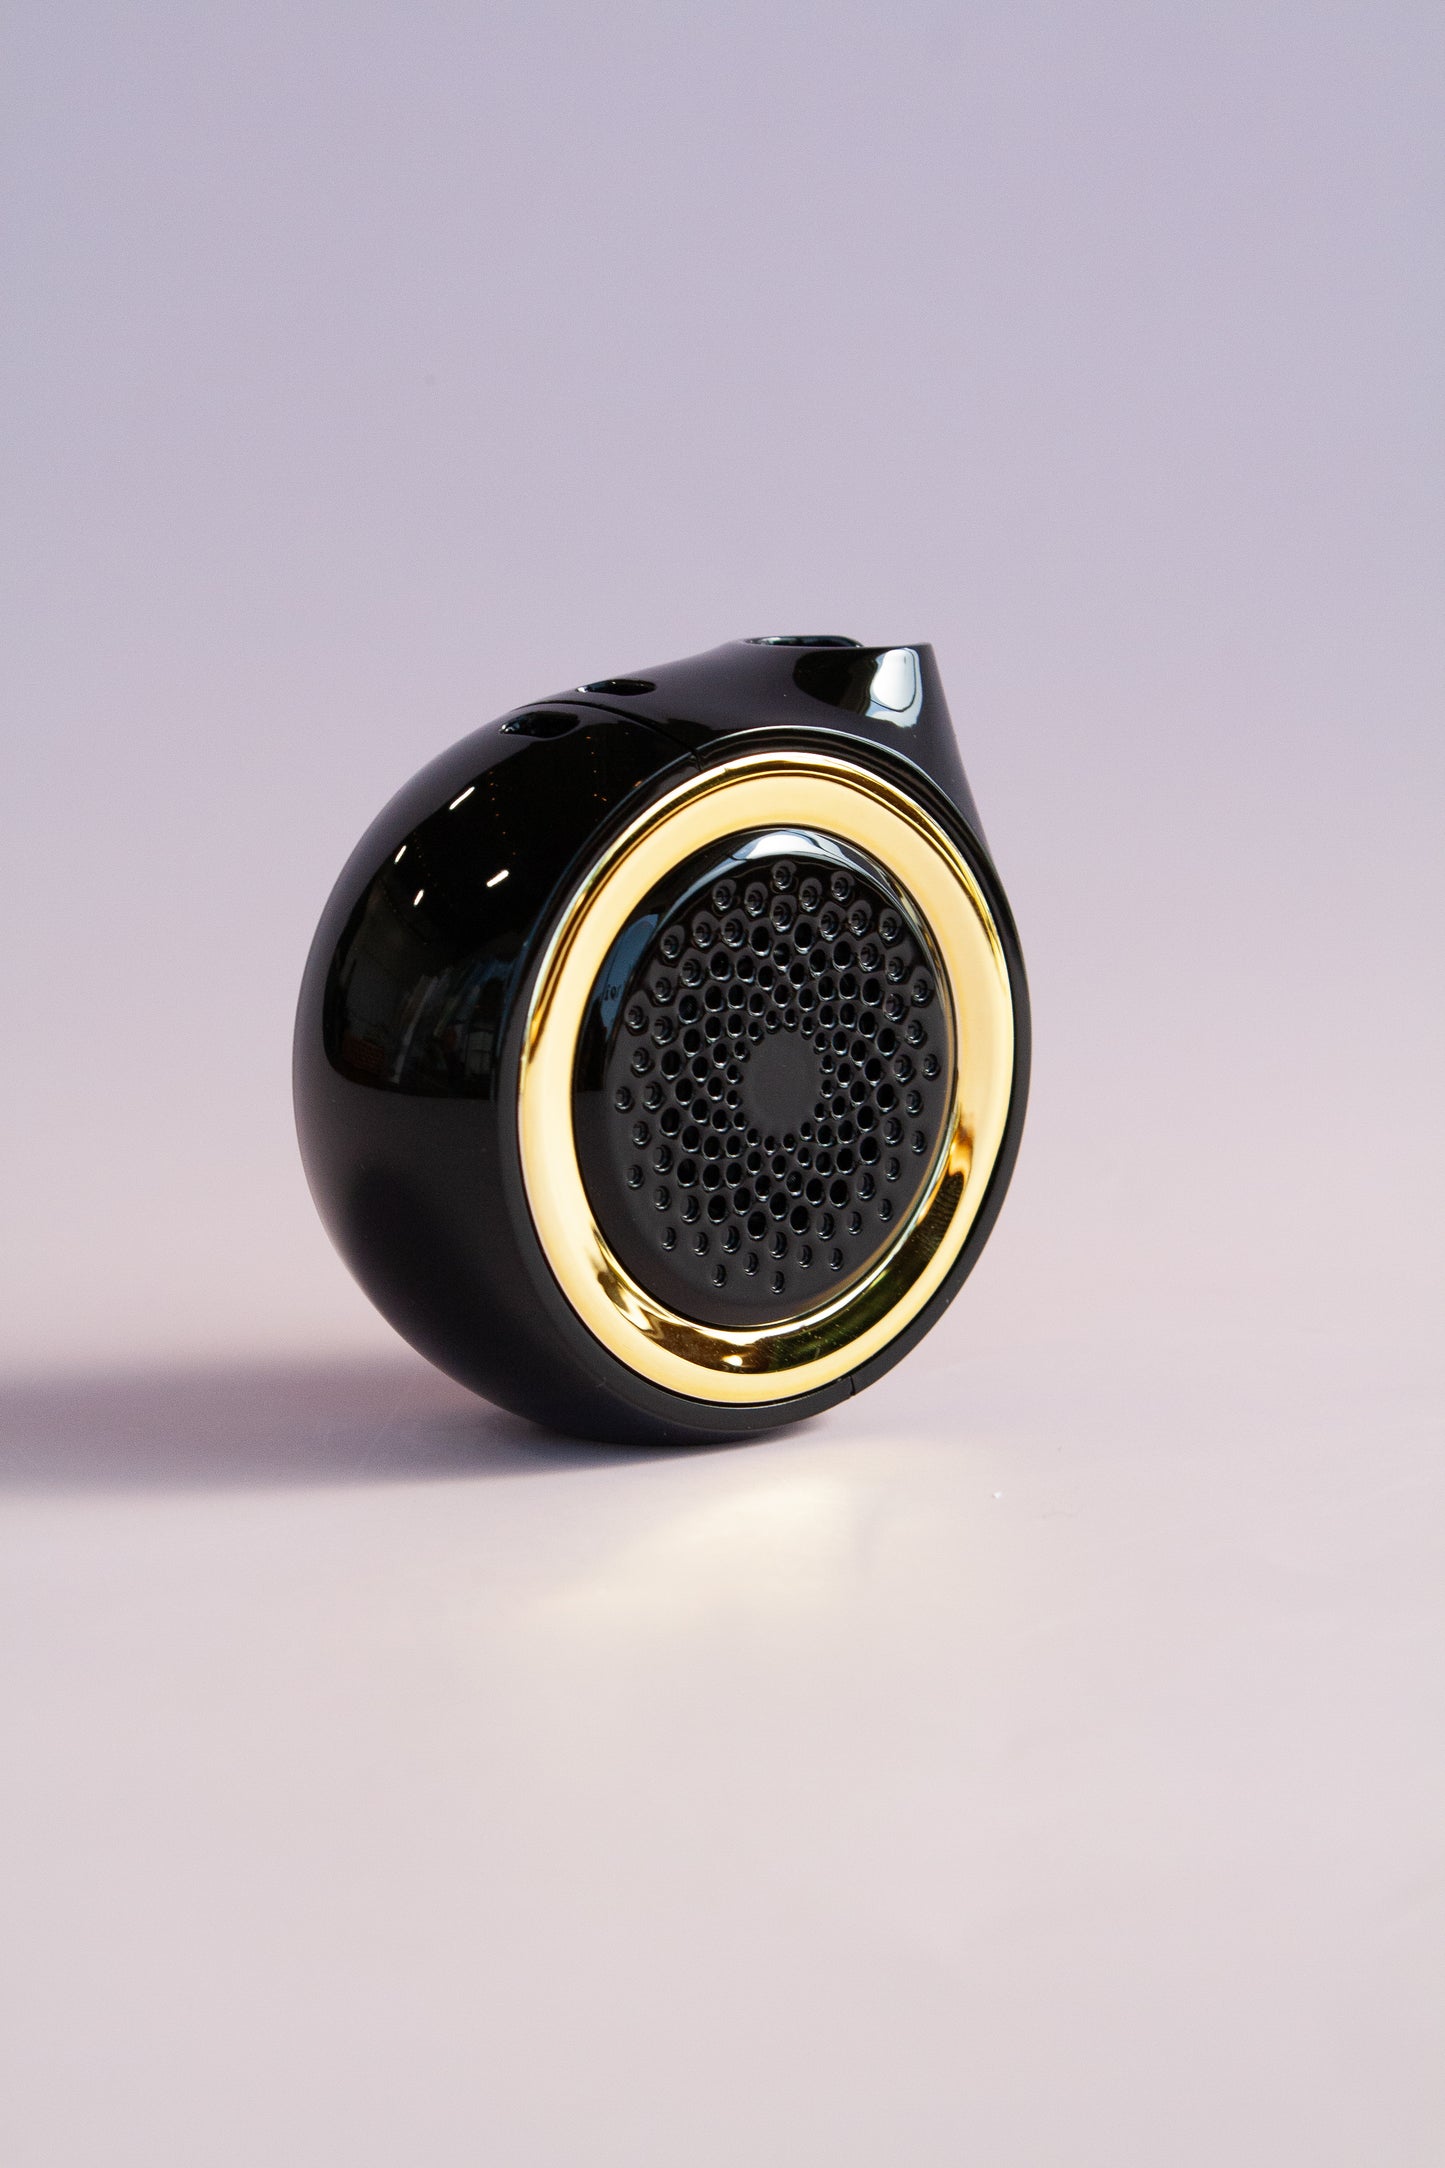 Ooze Movez Wireless Speaker 510 vape Battery